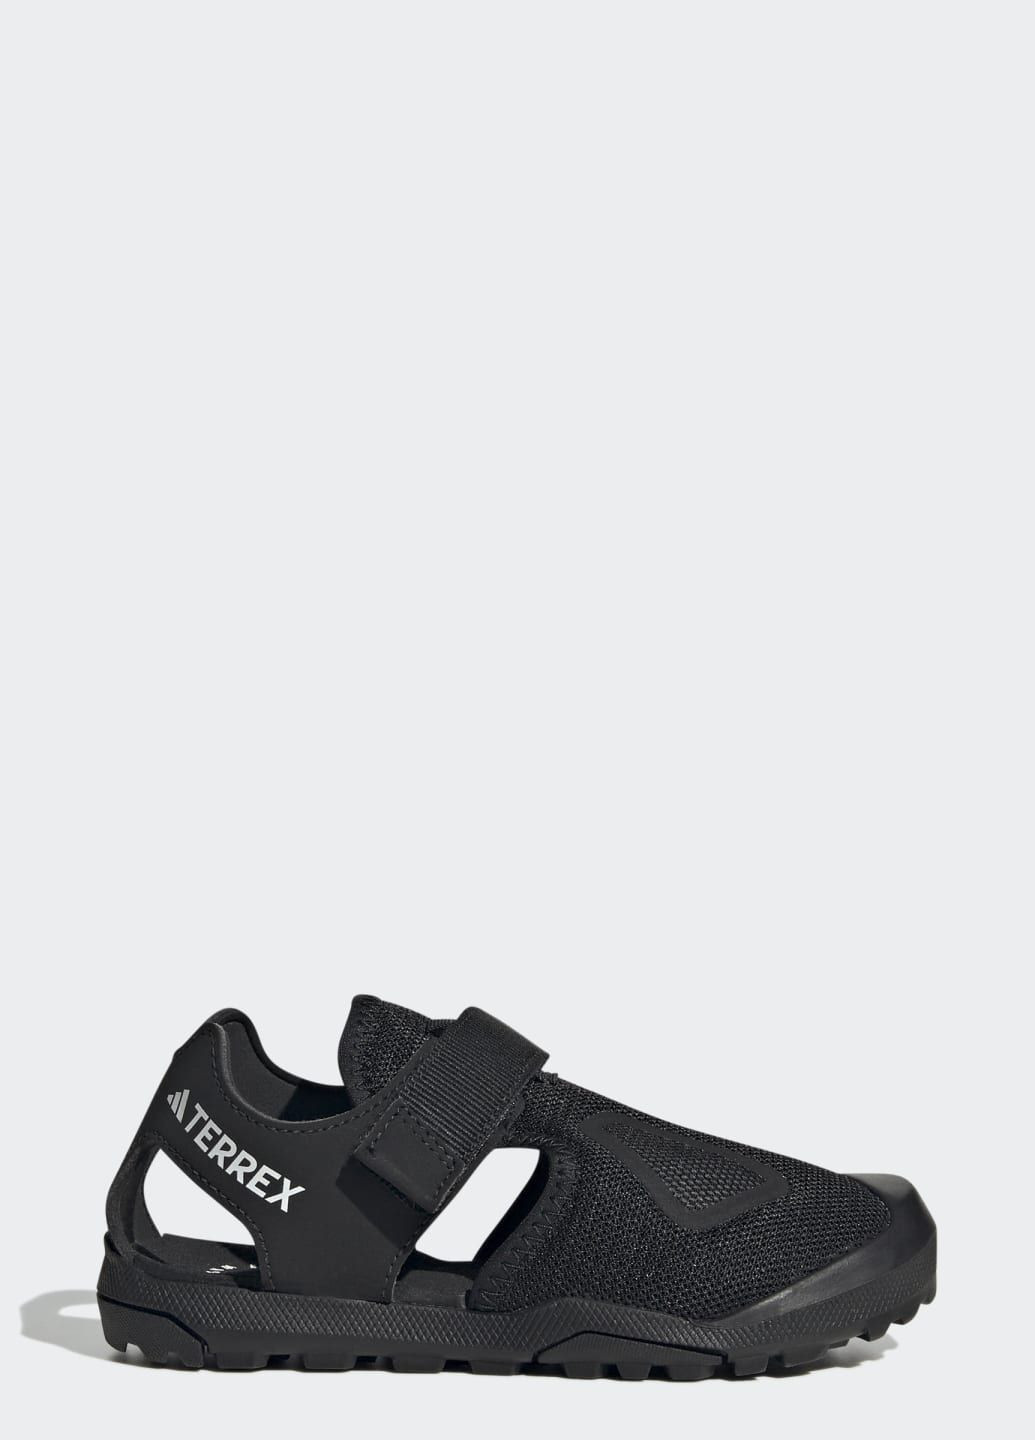 Черные спортивные сандалии terrex captain toey 2.0 adidas